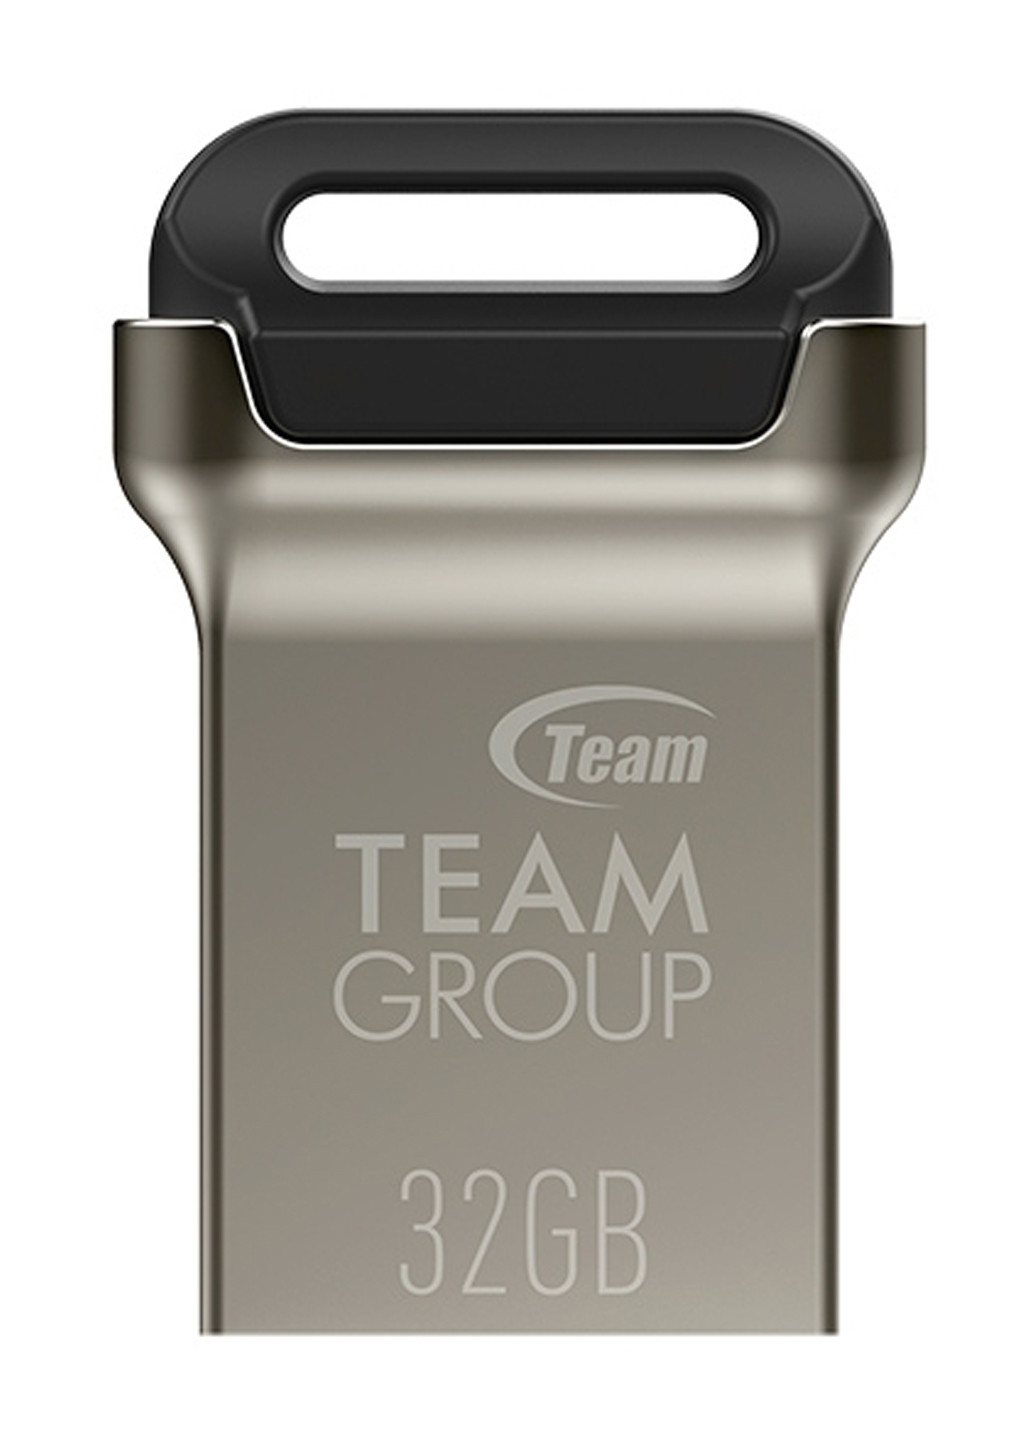 Флеш пам'ять USB C162 32GB Metal (TC162332GB01) Team флеш память usb team c162 32gb metal (tc162332gb01) (134201663)